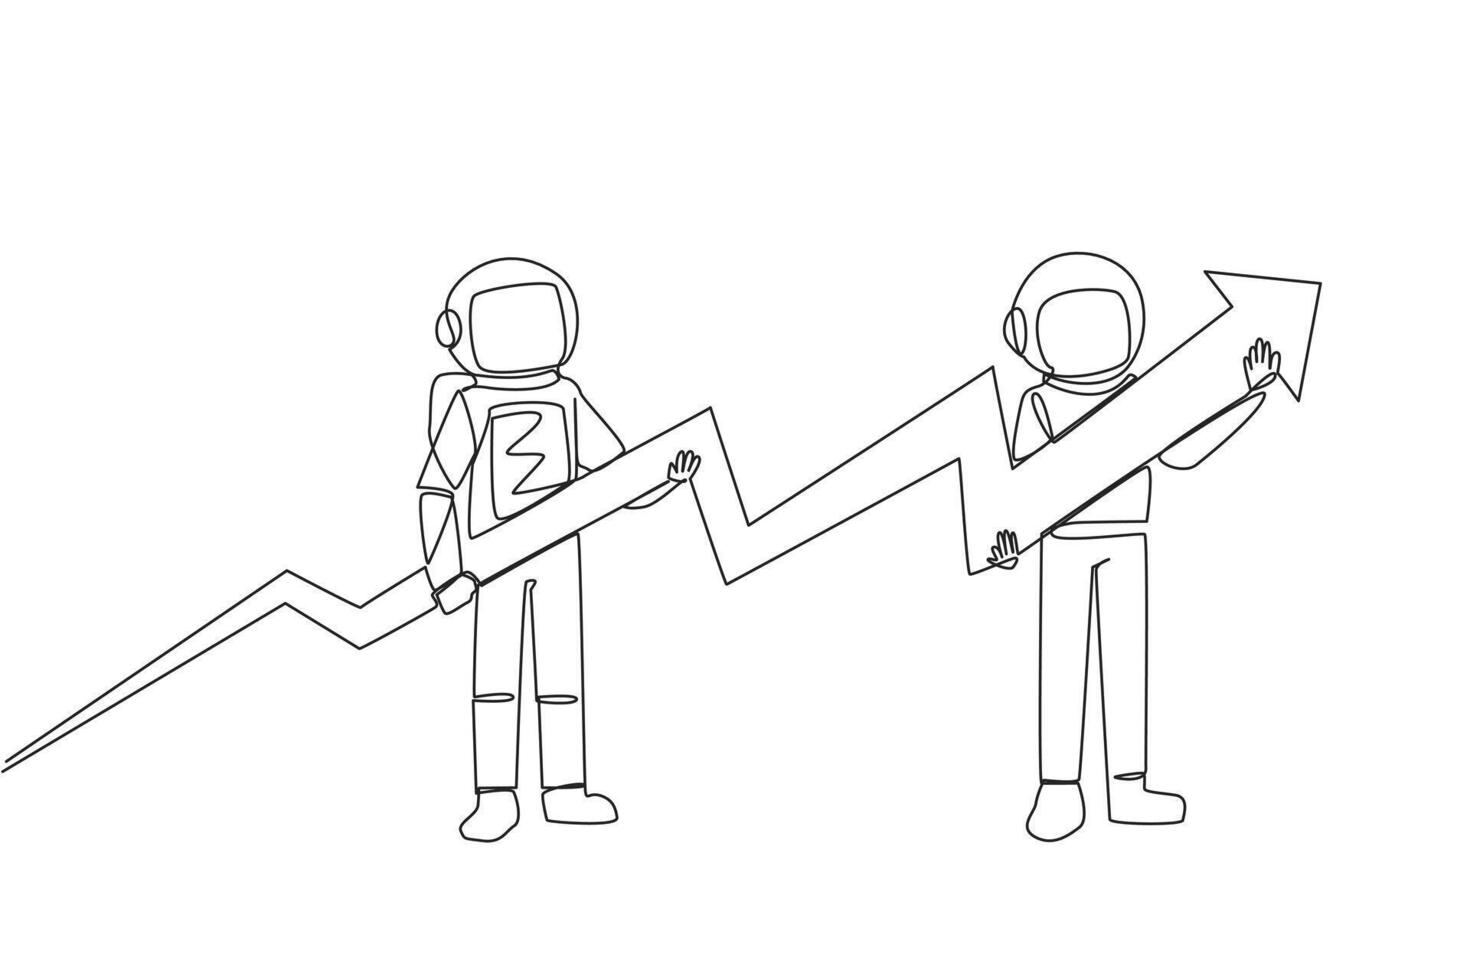 Single einer Linie Zeichnung zwei Astronauten halten ein mittelgroße Pfeil Grafik deren endet haben erhöht. Raumfahrer Zusammenarbeit. kosmisch Galaxis tief Raum. kosmisch. kontinuierlich Linie Design Grafik Illustration vektor